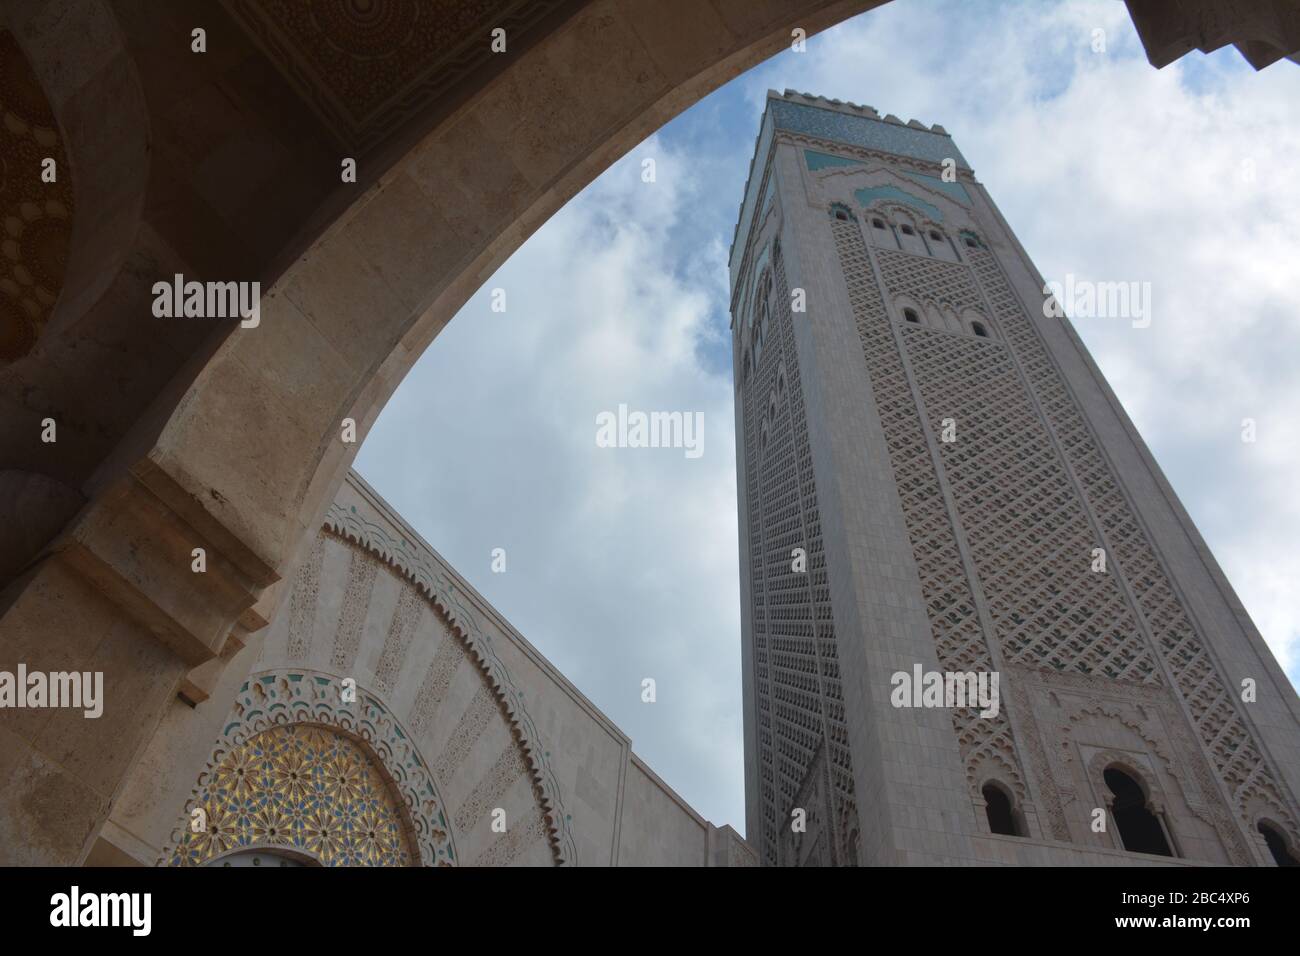 Il minareto più grande del mondo, alto 210 m, si trova presso la moschea di Hassan II, Casablanca, Marocco, vista qui attraverso una delle arcate della struttura moderna. Foto Stock